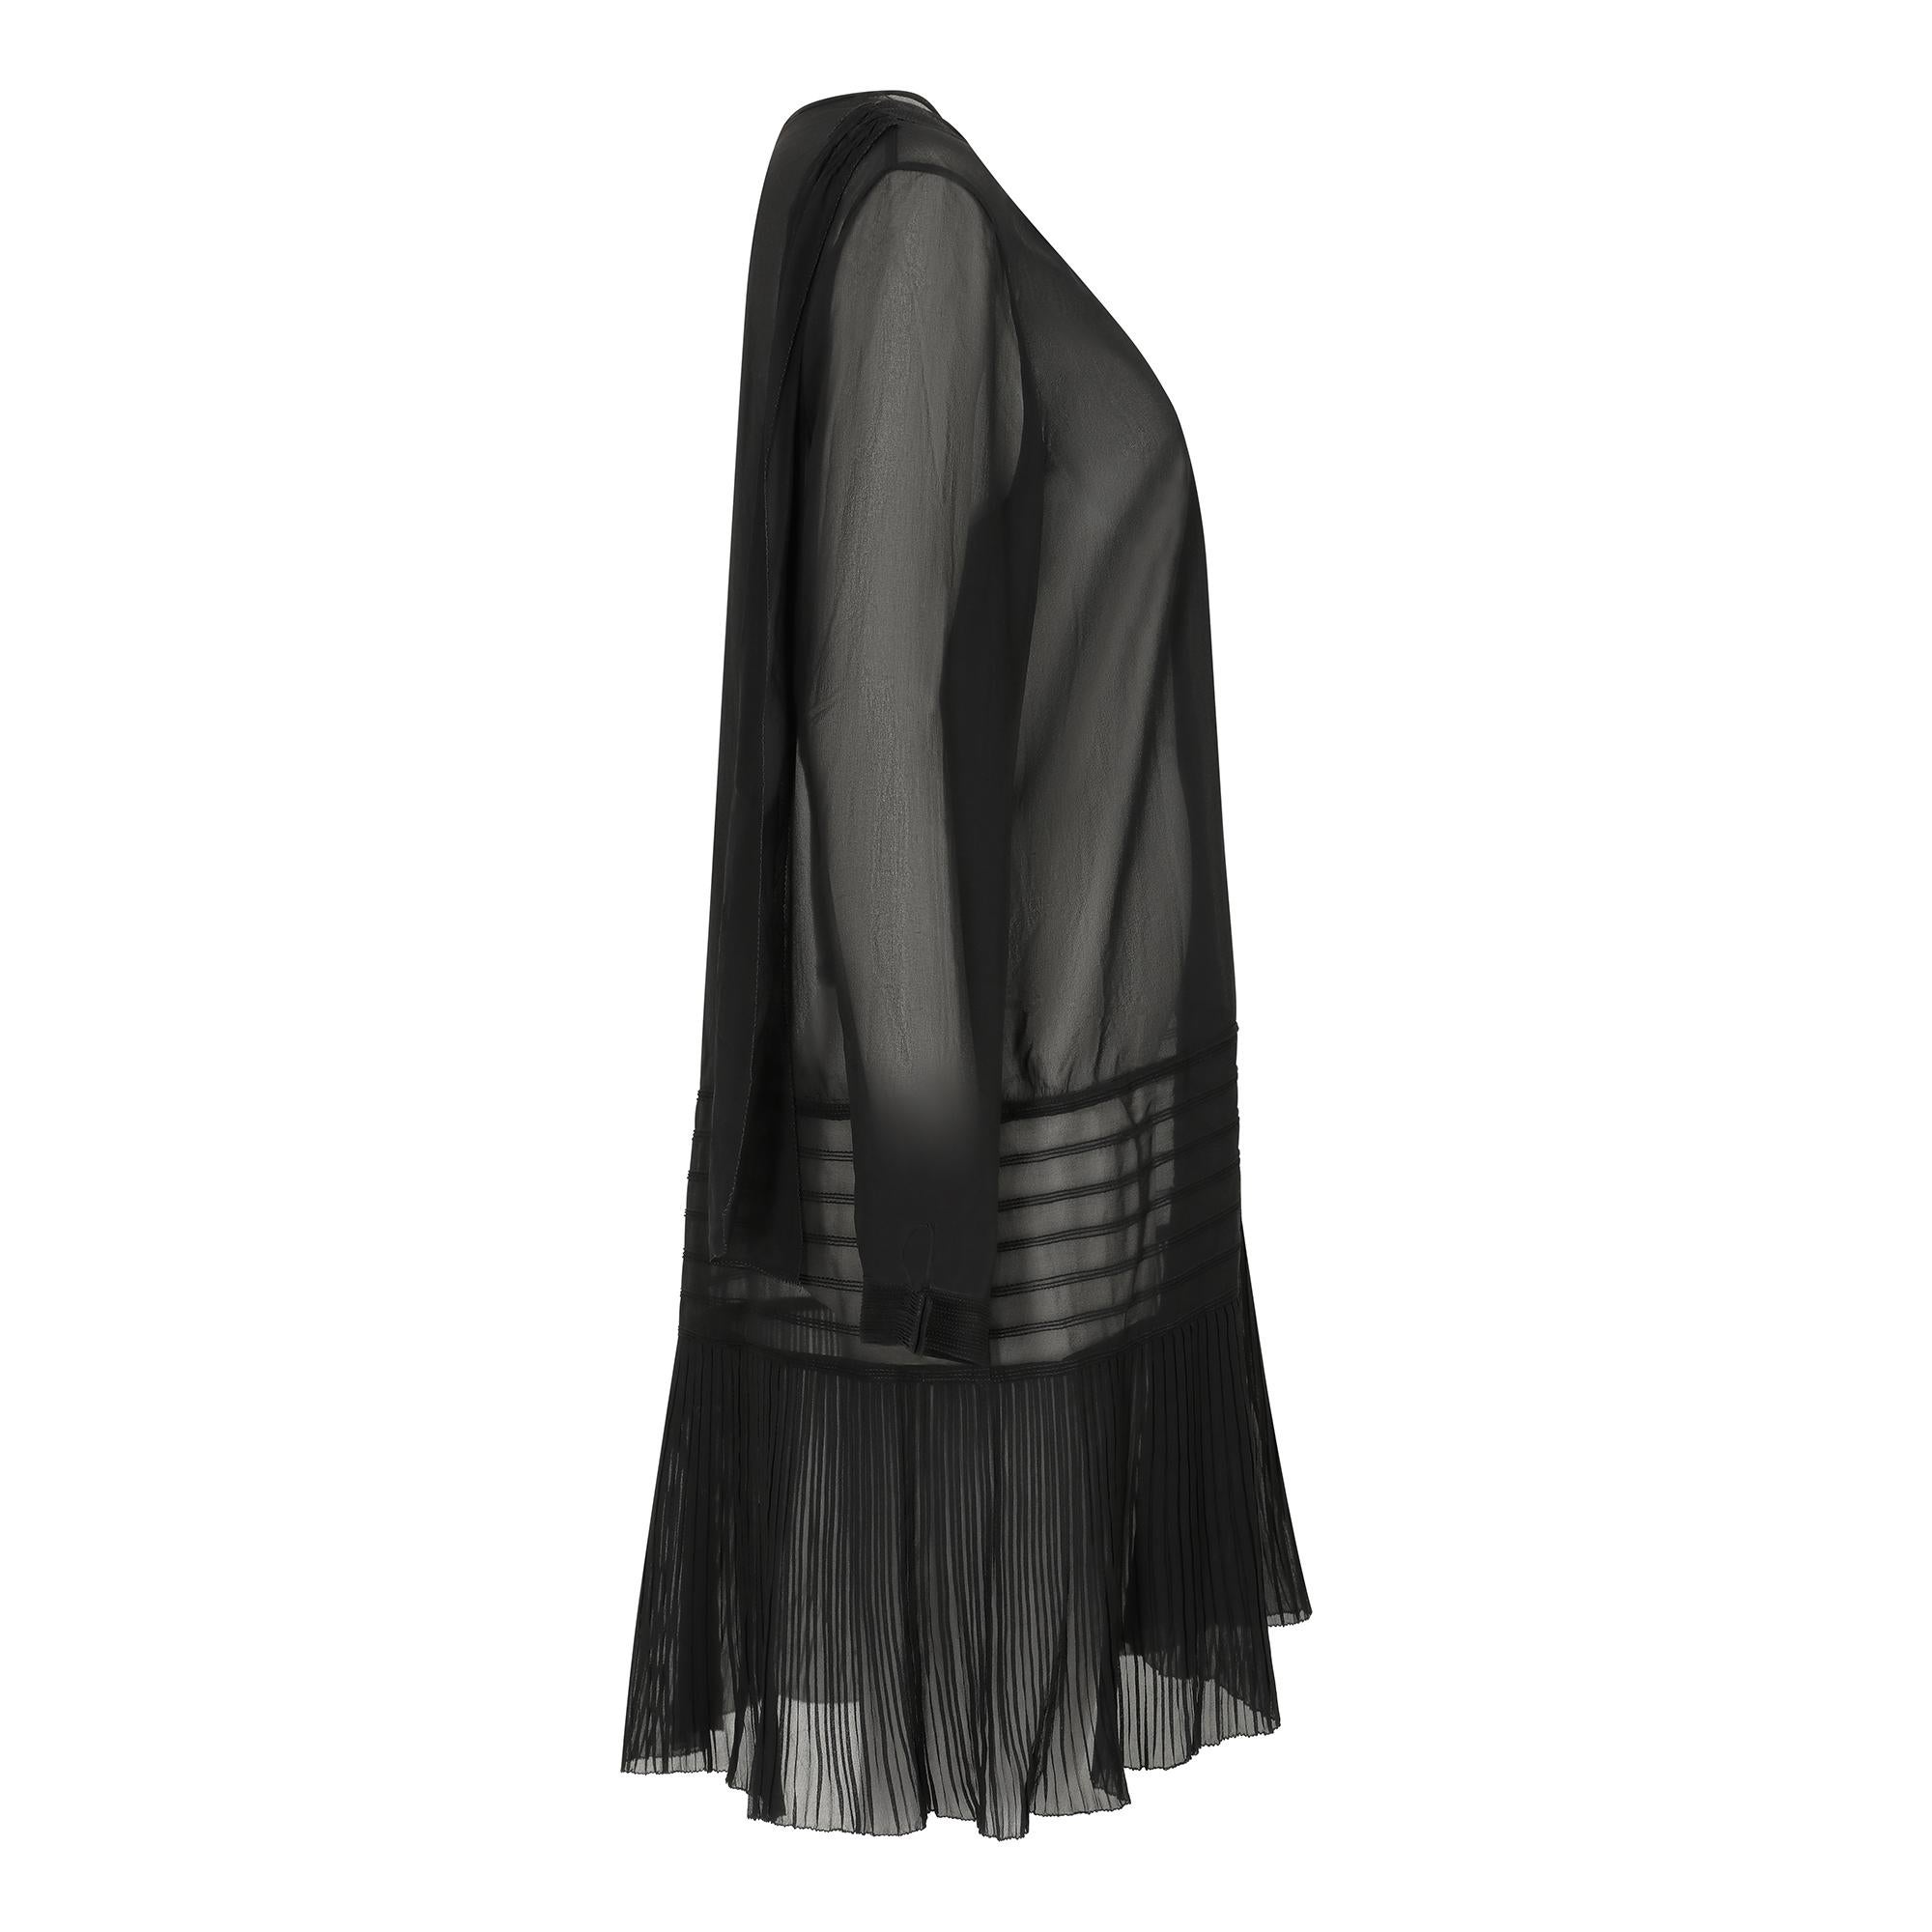 Dieses originale schwarze Georgette-Kleid aus den 1920er Jahren, das aus Amerika stammt, befindet sich in einem außergewöhnlichen Vintage-Zustand. Es weist einige sehr interessante Designmerkmale auf, darunter einen doppelten V-Ausschnitt mit einer